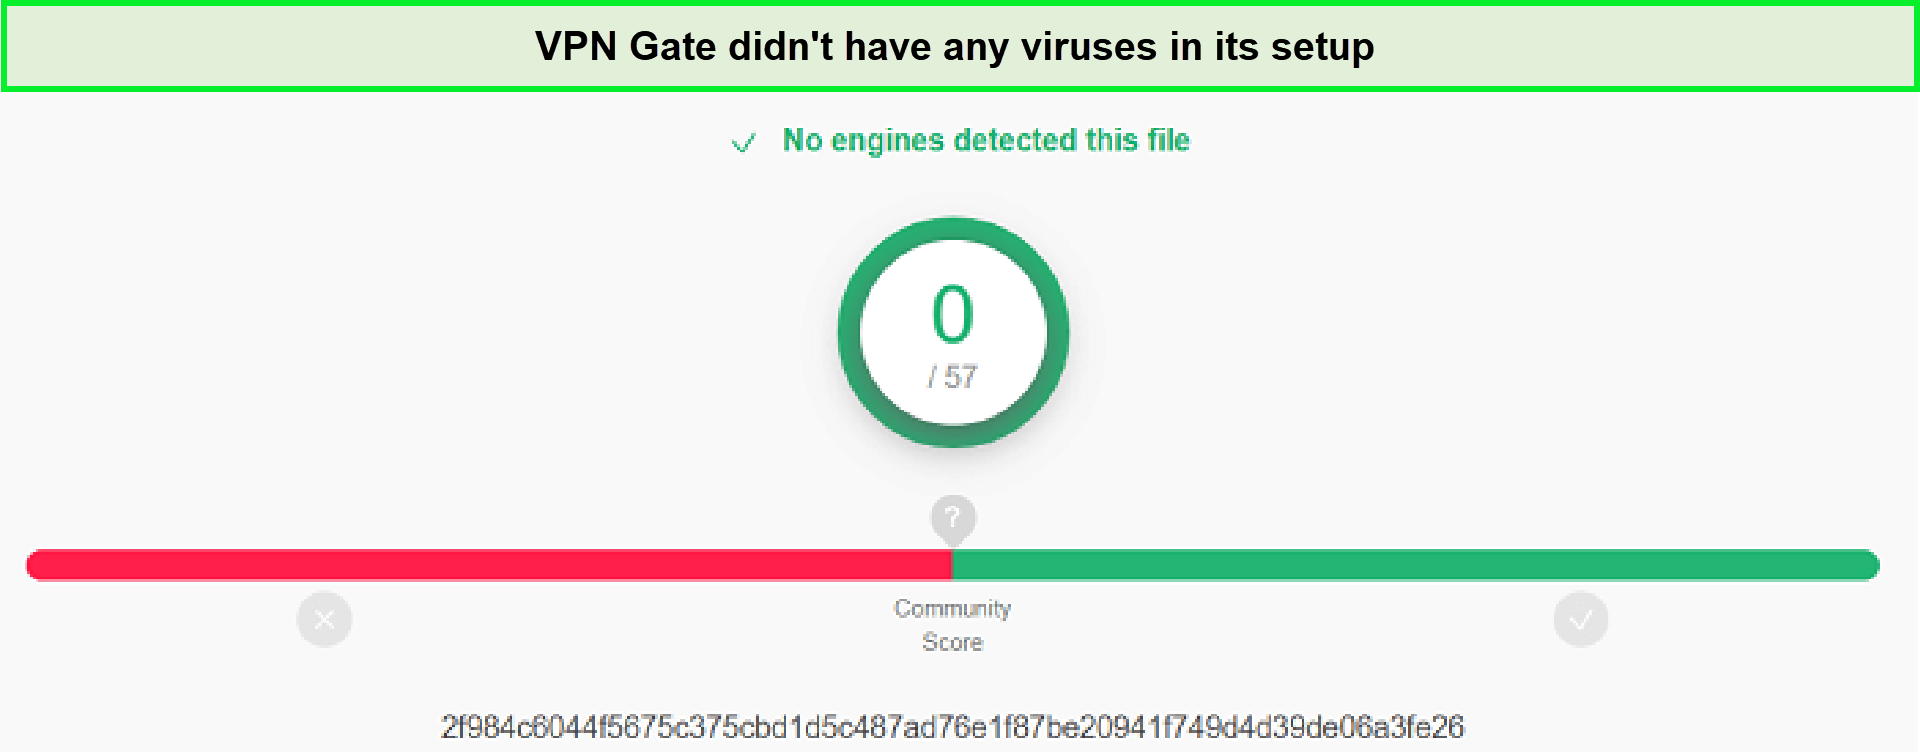 Virus-Test-in-Singapore-VPN-Gate